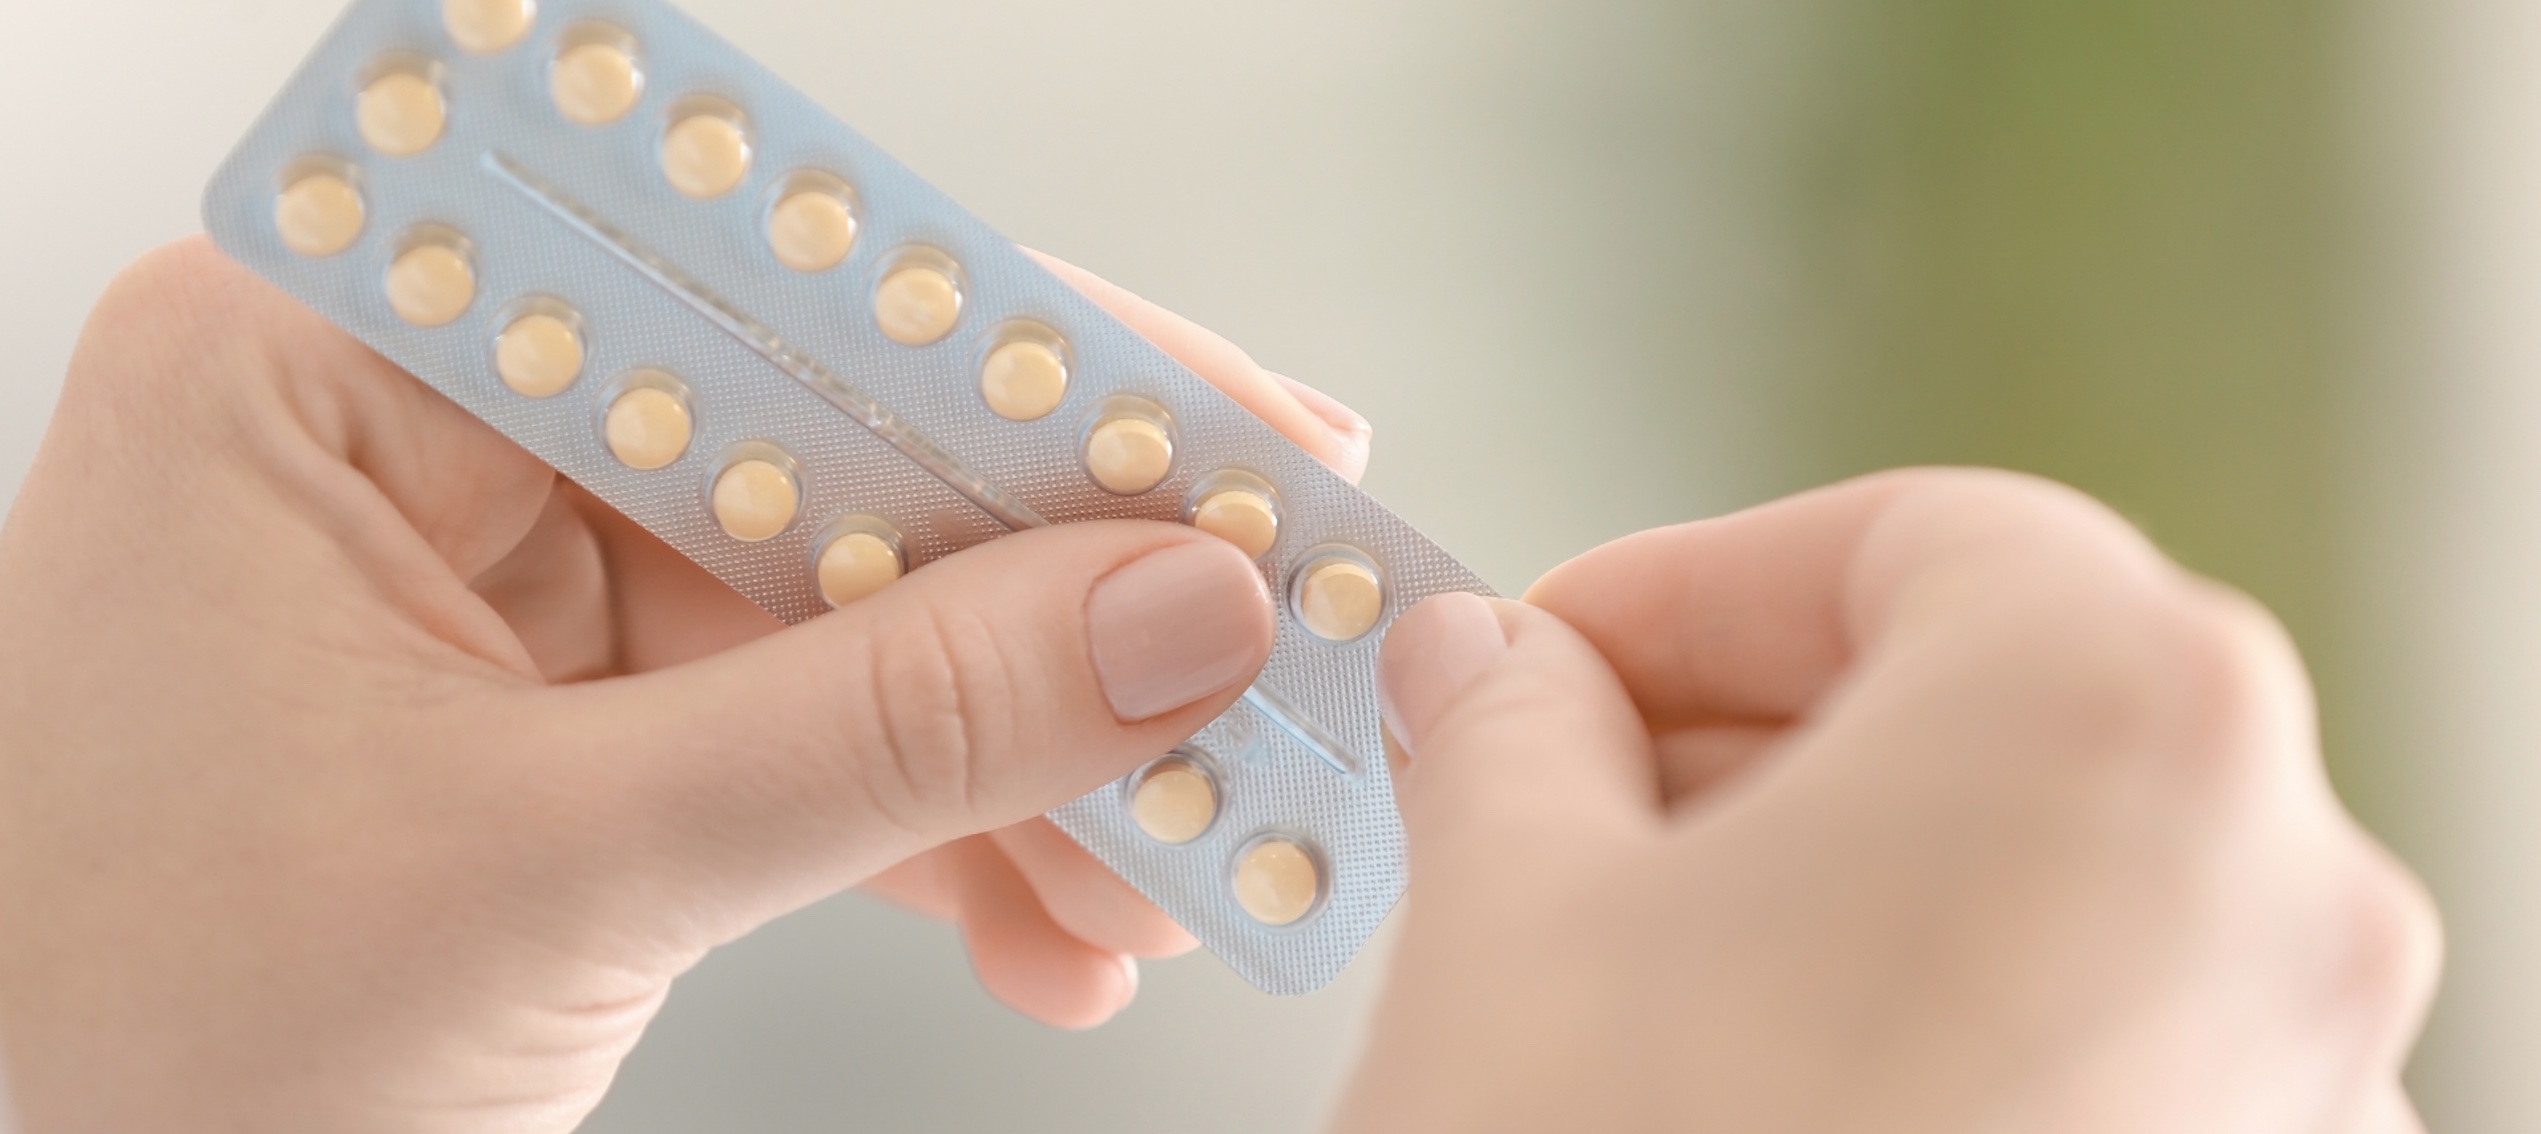 L'arrêt de la pilule, les symptômes - Part 2/3 - Hormonal